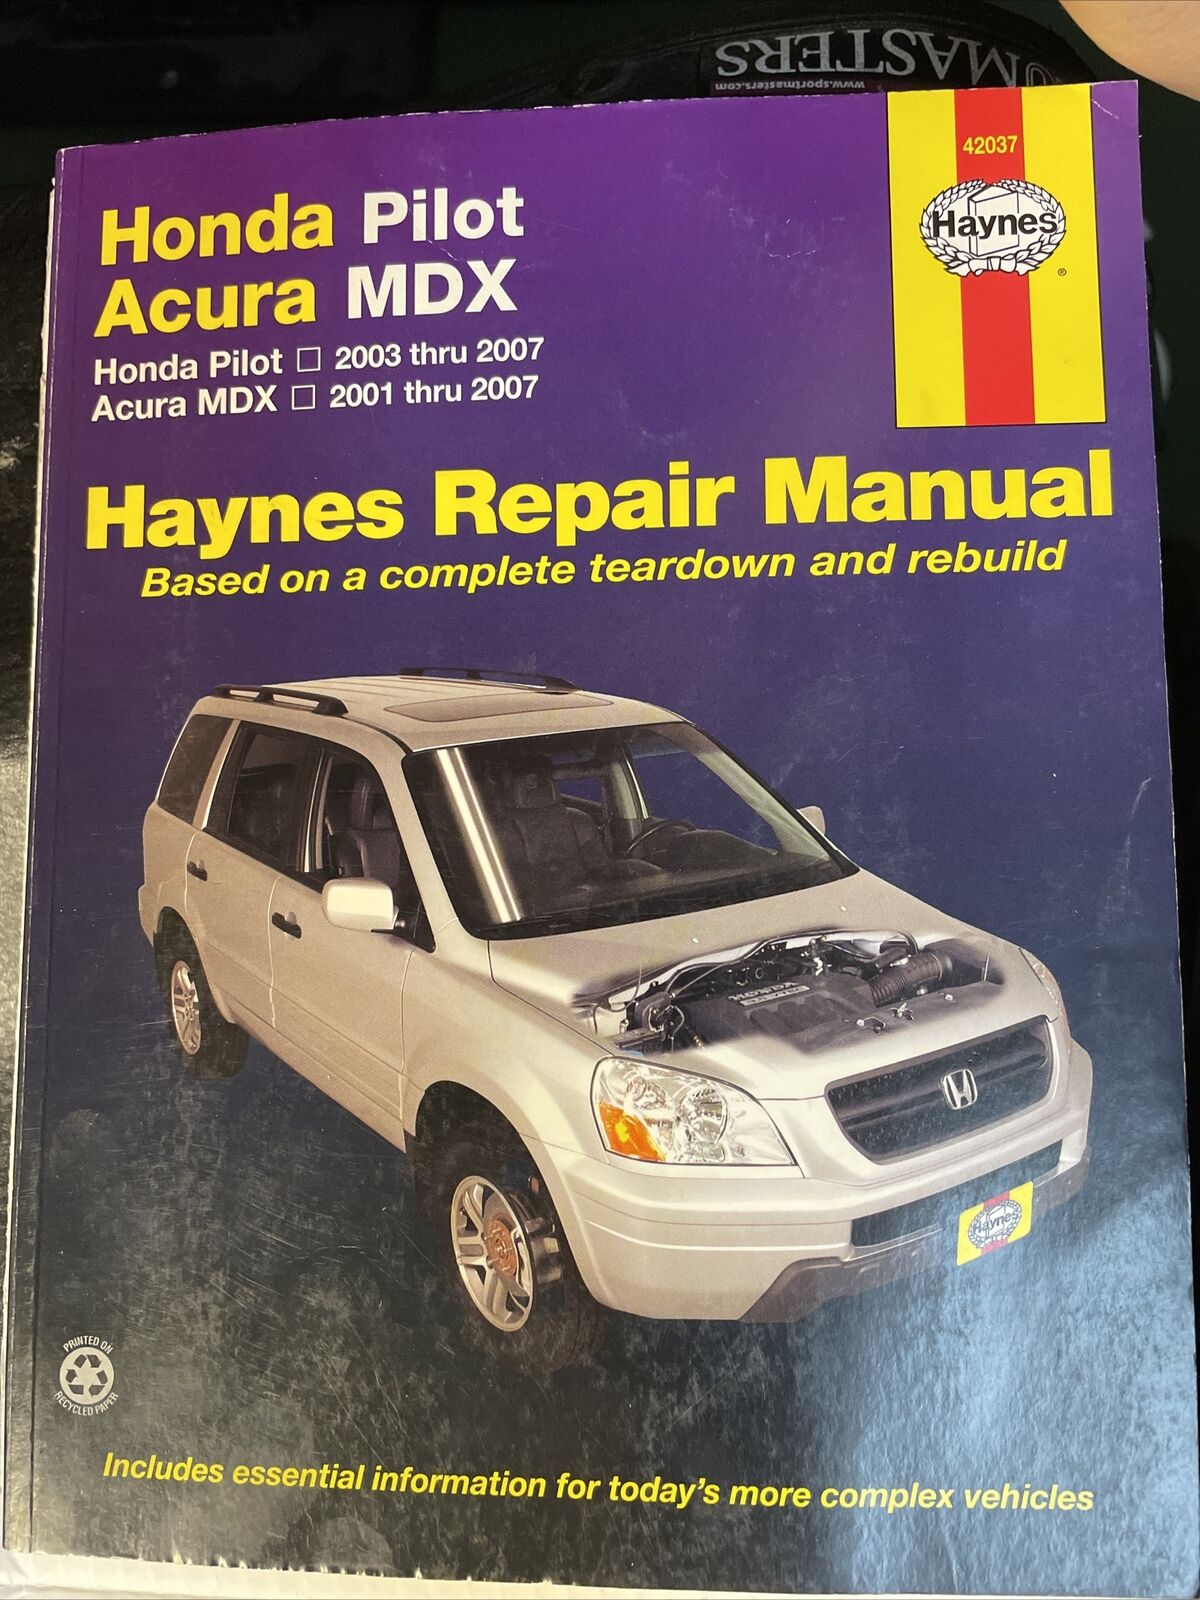 Haynes Car Repair Manual.Honda Pilot 2003-07. Acura 2001-07.(Extra Instructions)